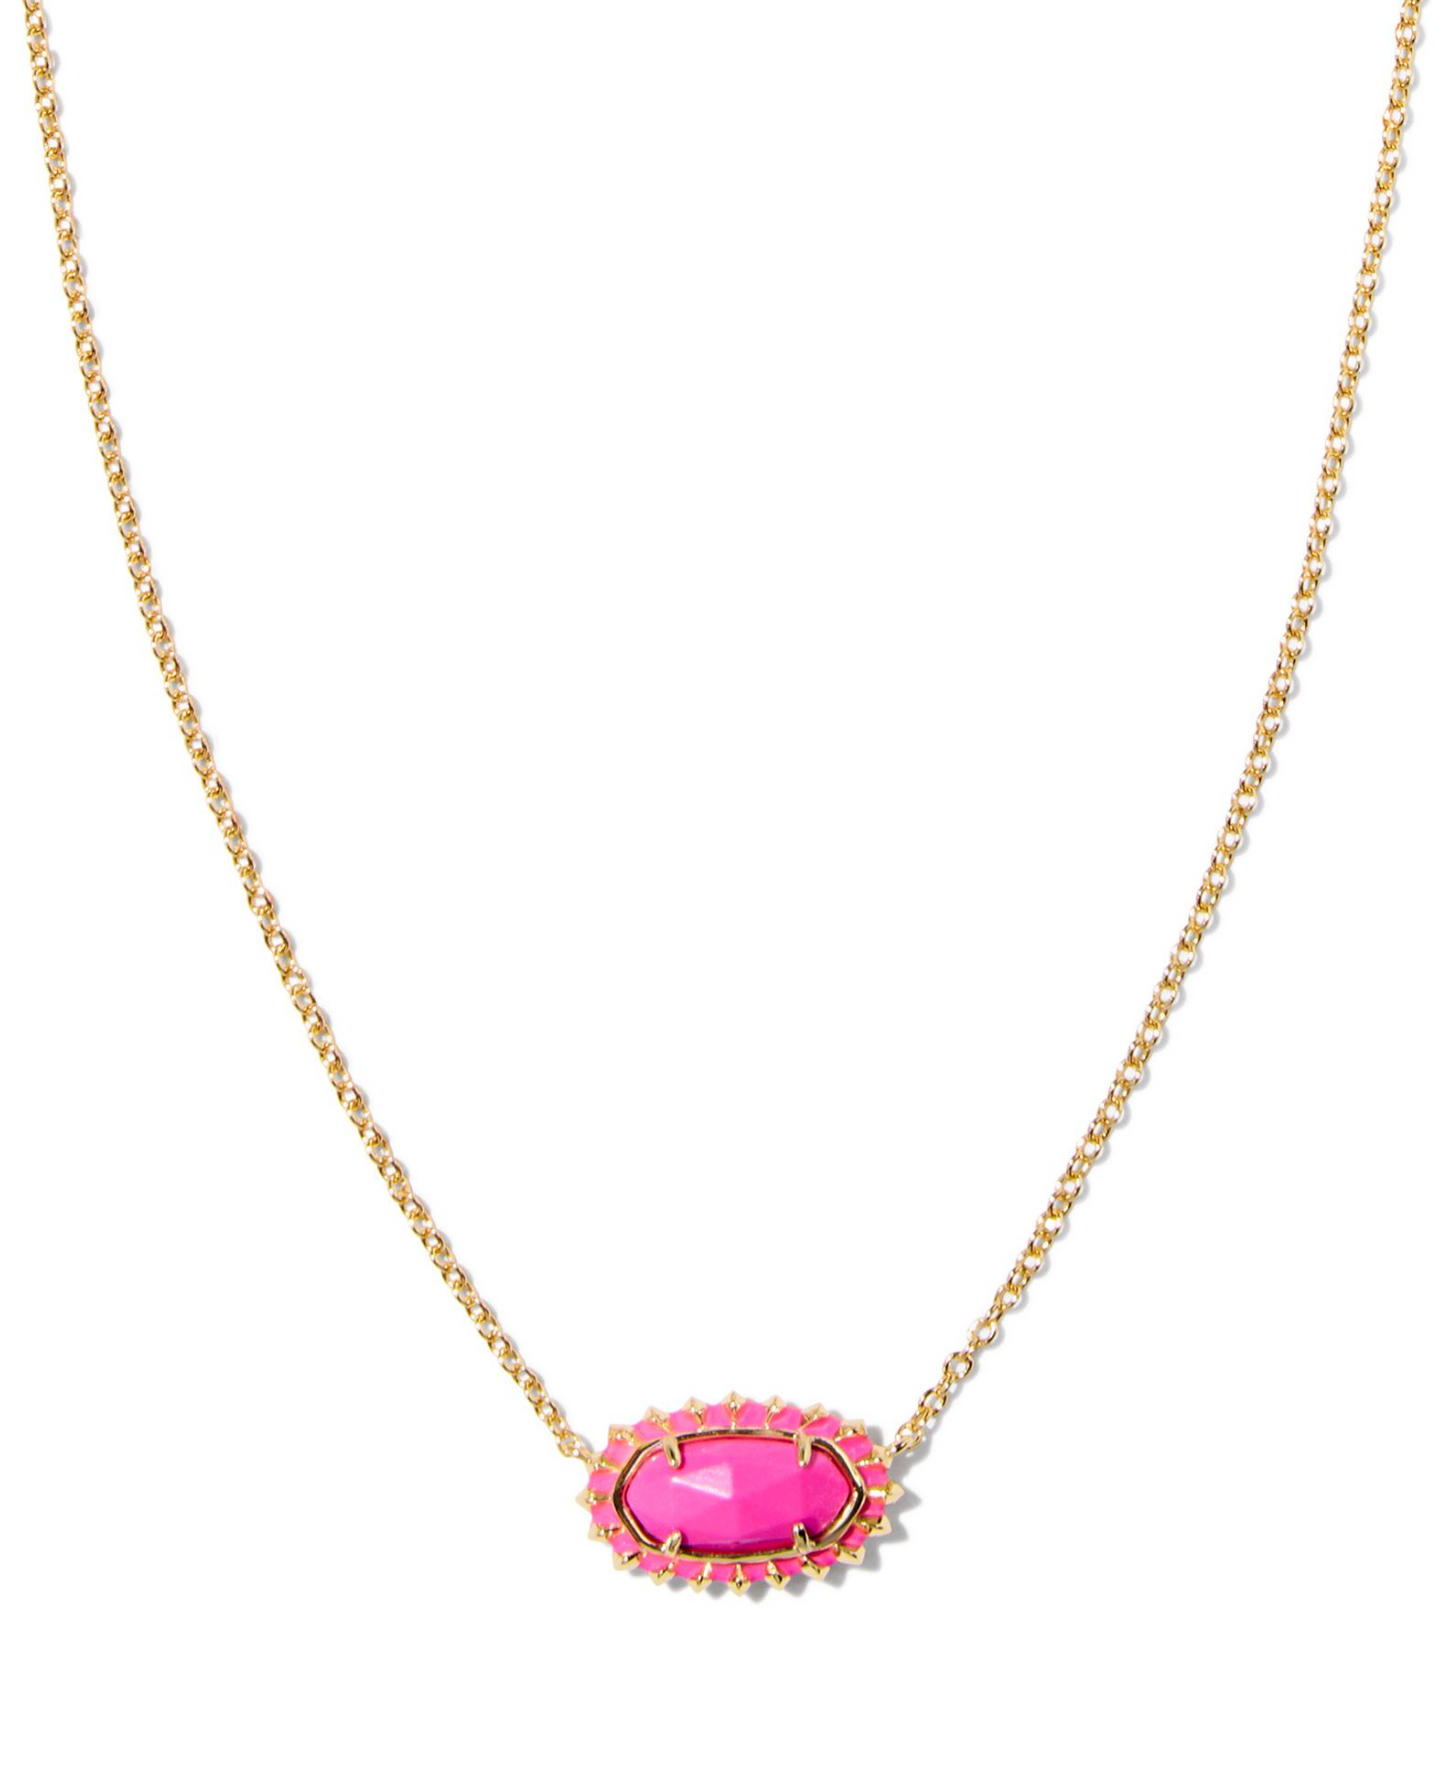 Elisa Gold Color Burst Frame Short Pendant Necklace in Neon Pink Magnesite | KENDRA SCOTT